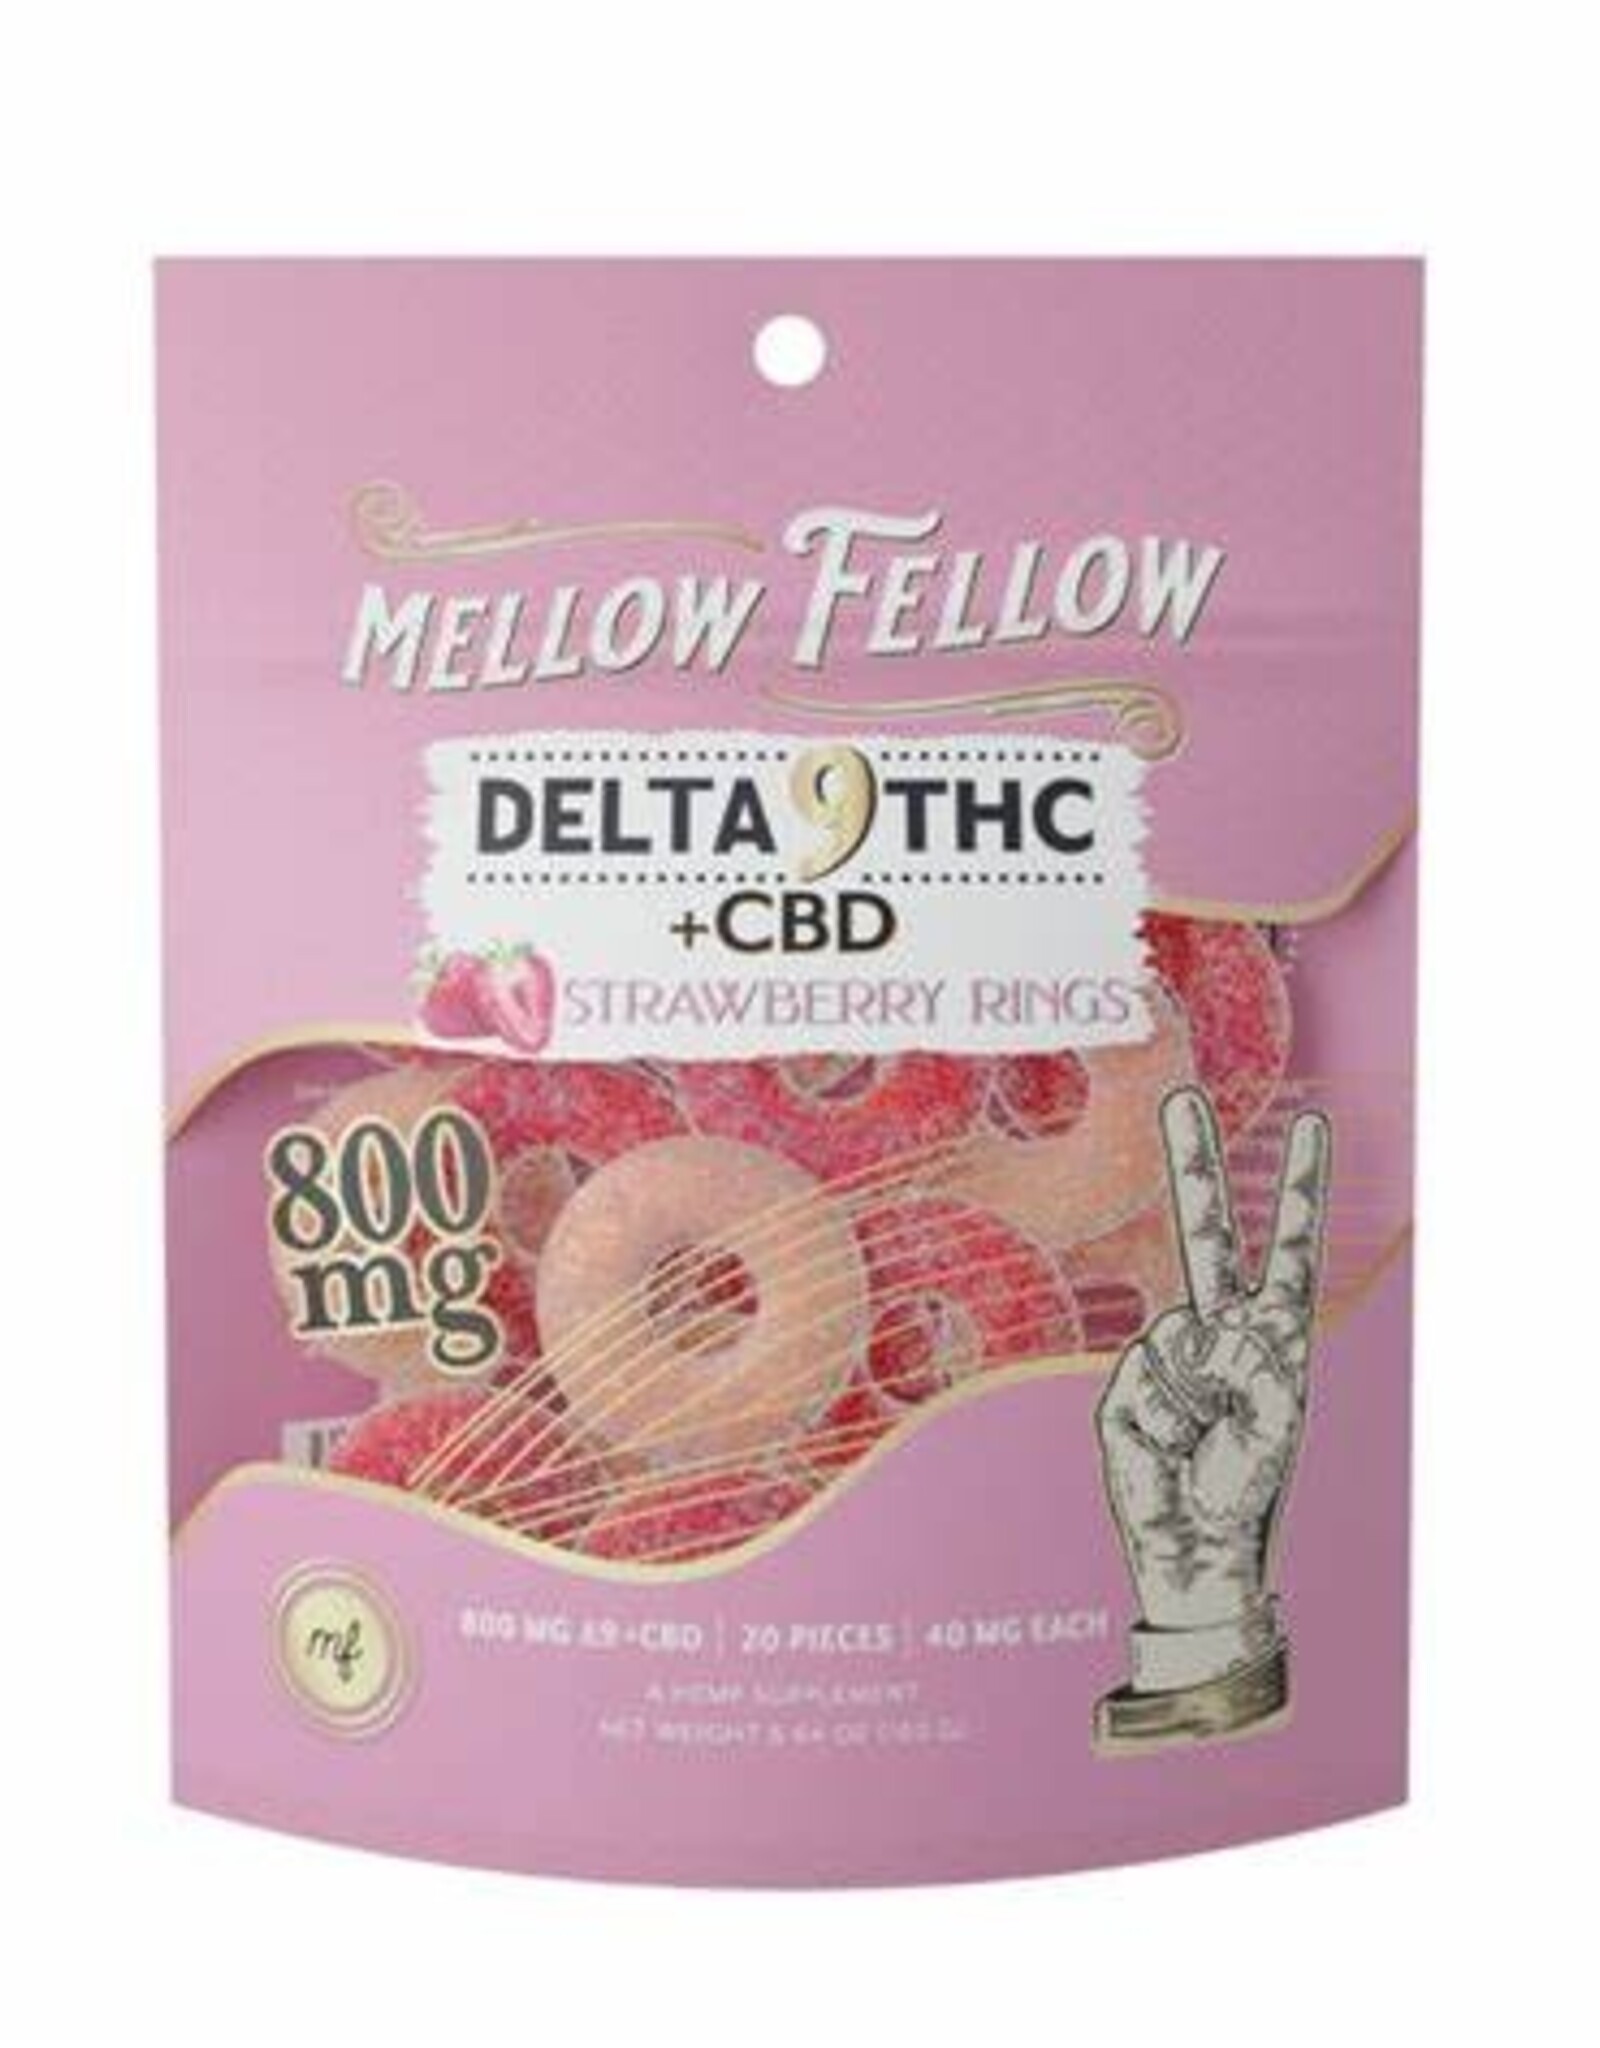 Mellow Fellow Mellow Fellow Delta 9 + CBD Strawberry Rings 800mg | 40mg each